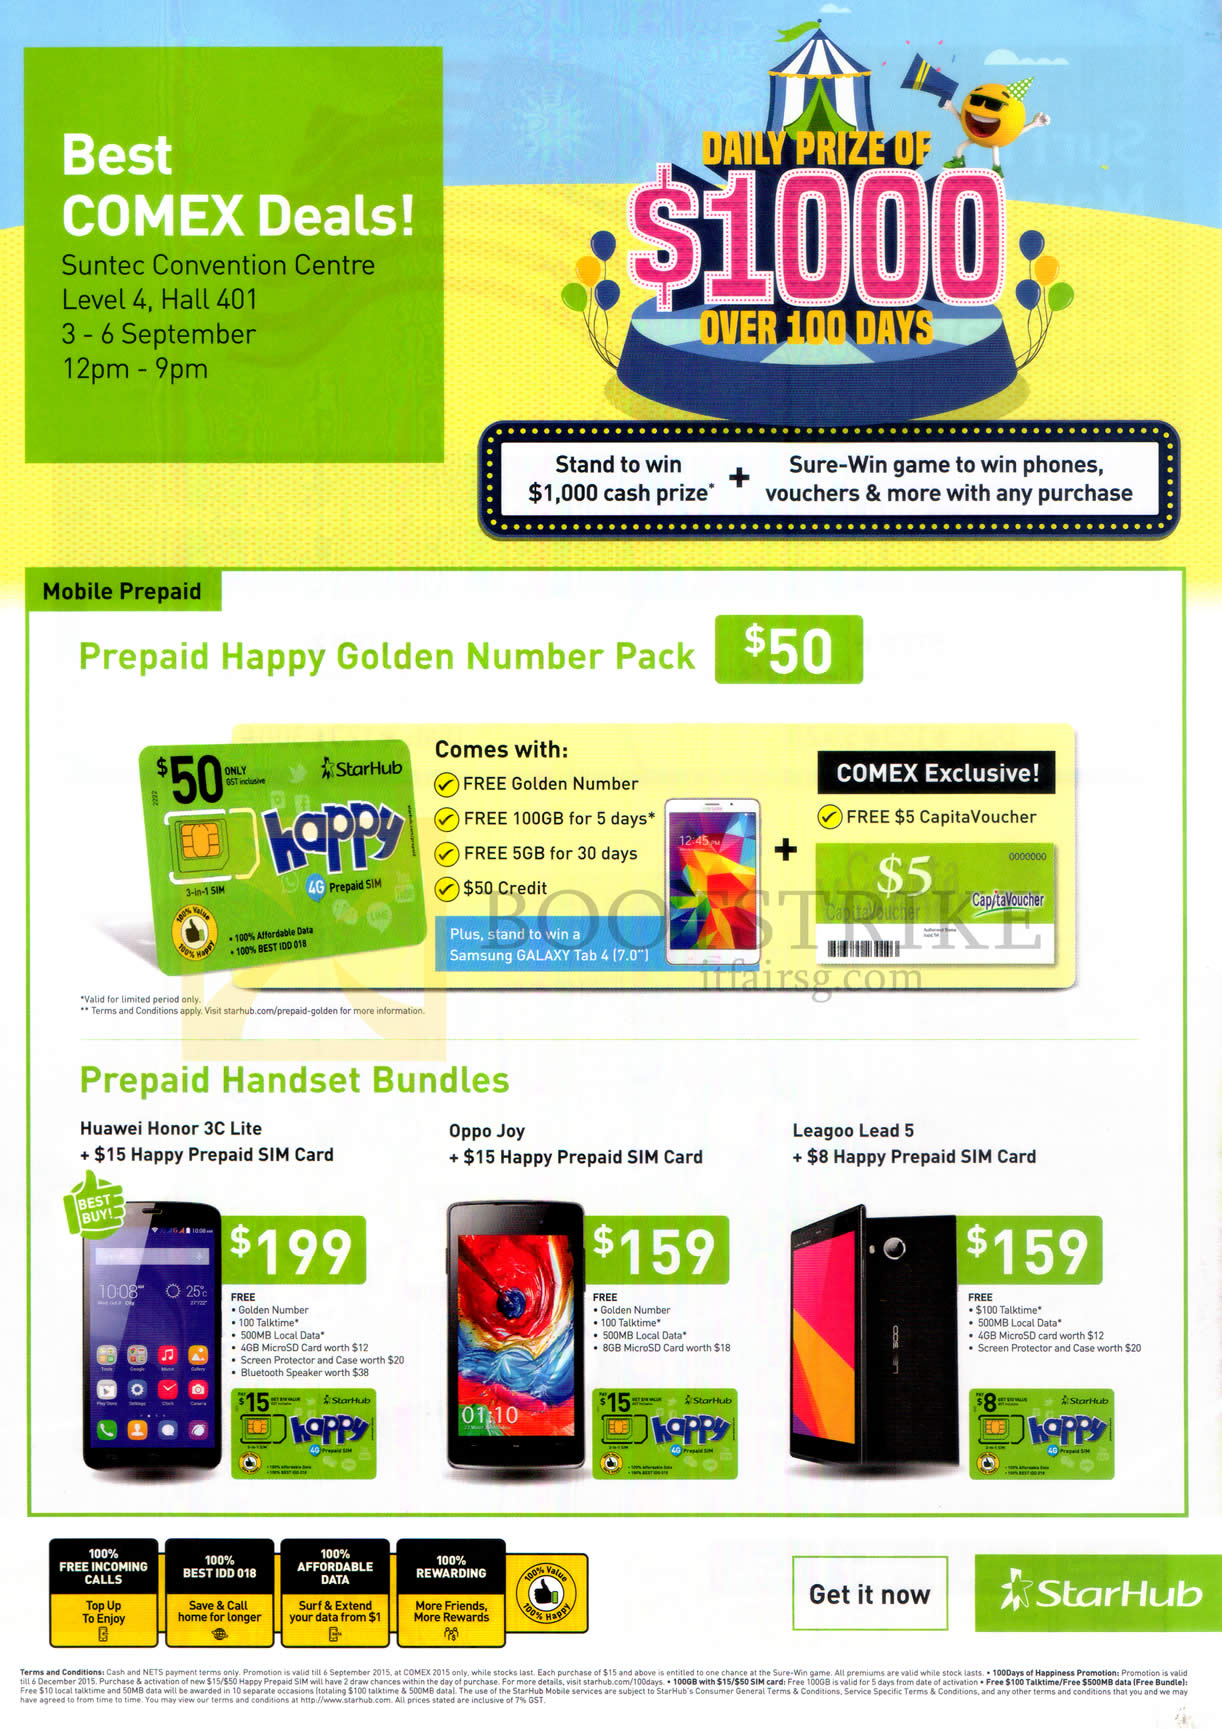 COMEX 2015 price list image brochure of Starhub Mobile Prepaid Golden Number Pack, Prepaid, Mobile Phones Huawei Honor 3C, Oppo Joy, Leagoo Lead 5